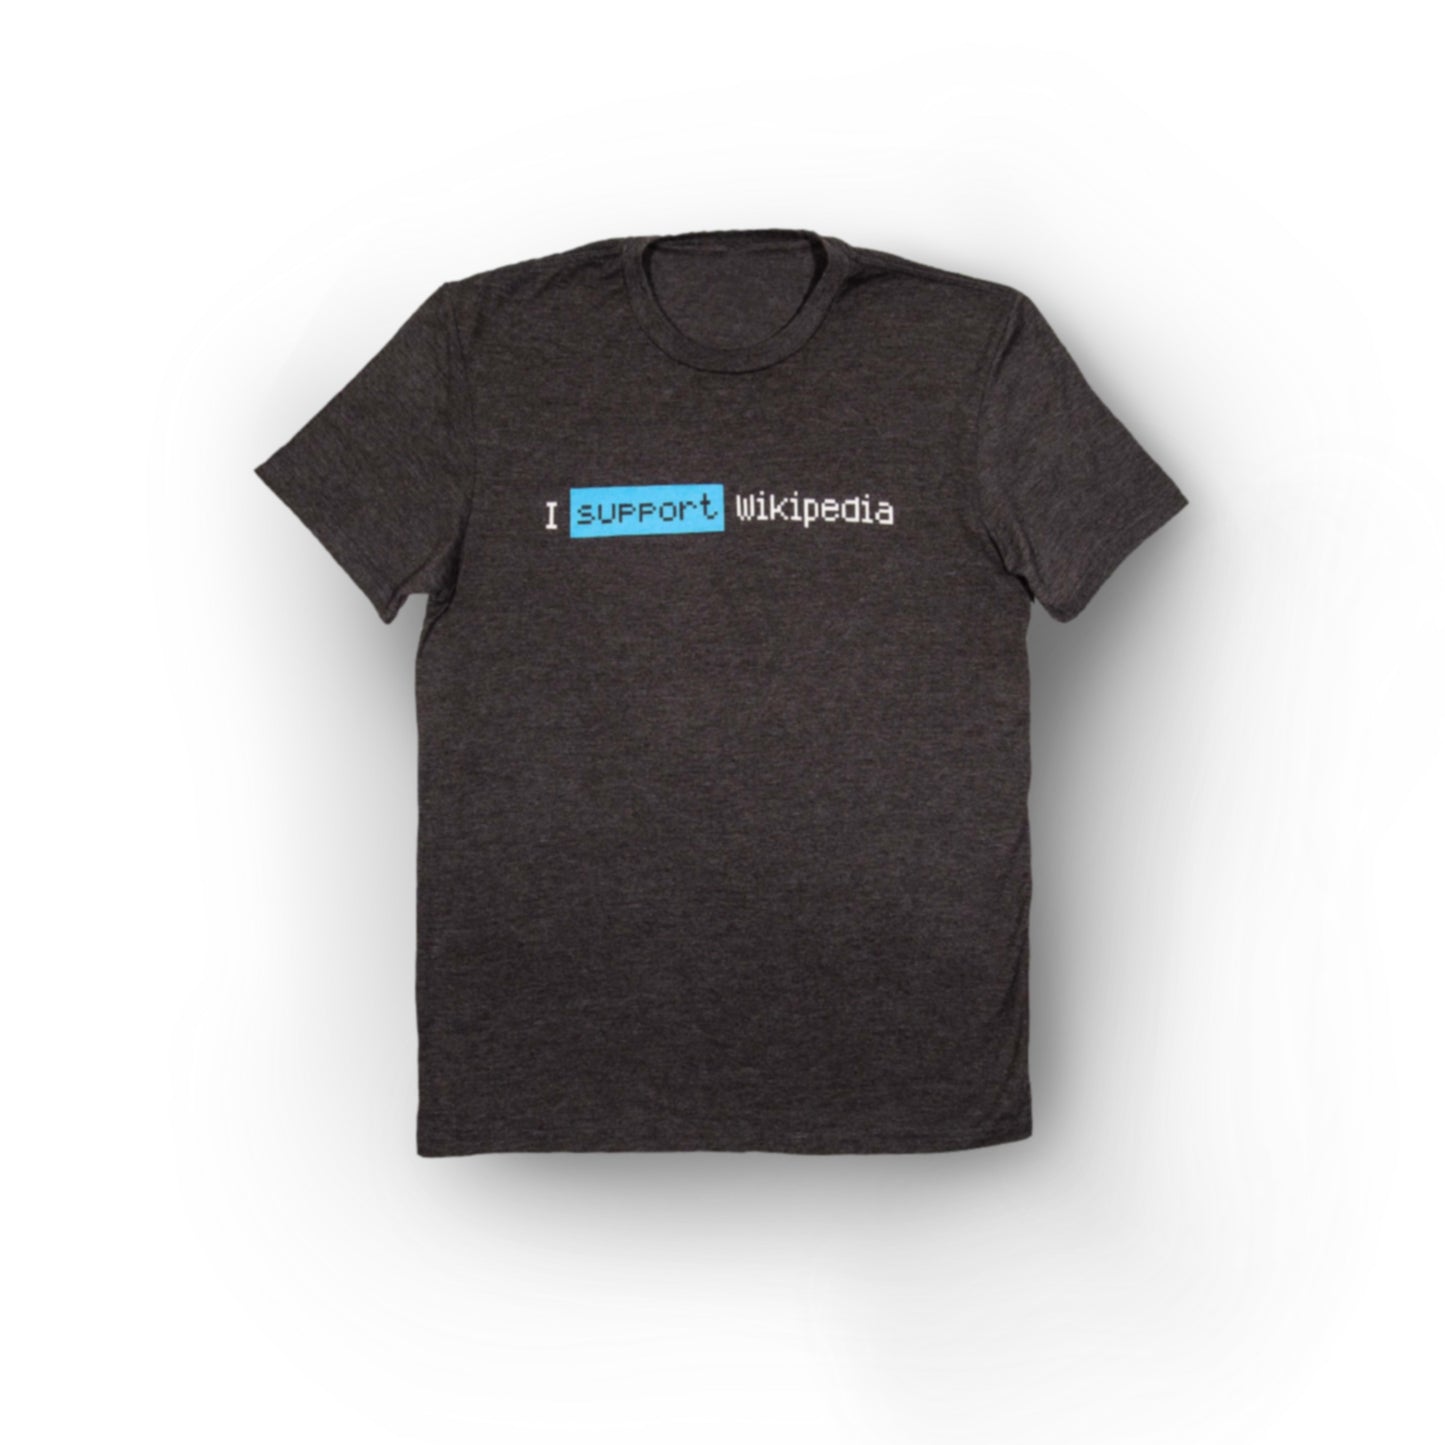 "I Support Wikipedia" Camiseta da caixa Unissex